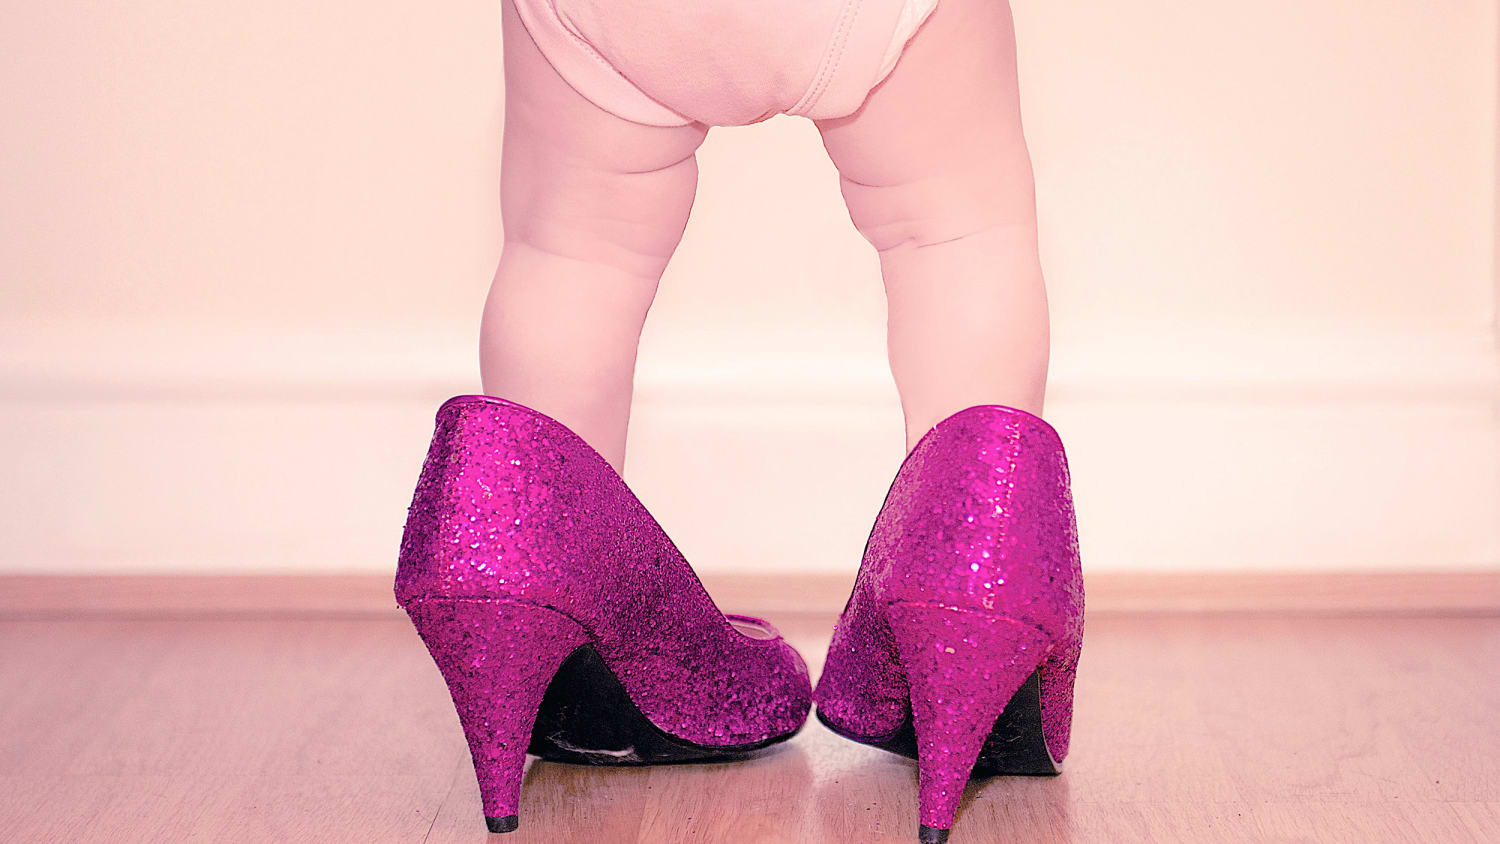 Pee Wee Pumps sells heels for babies 